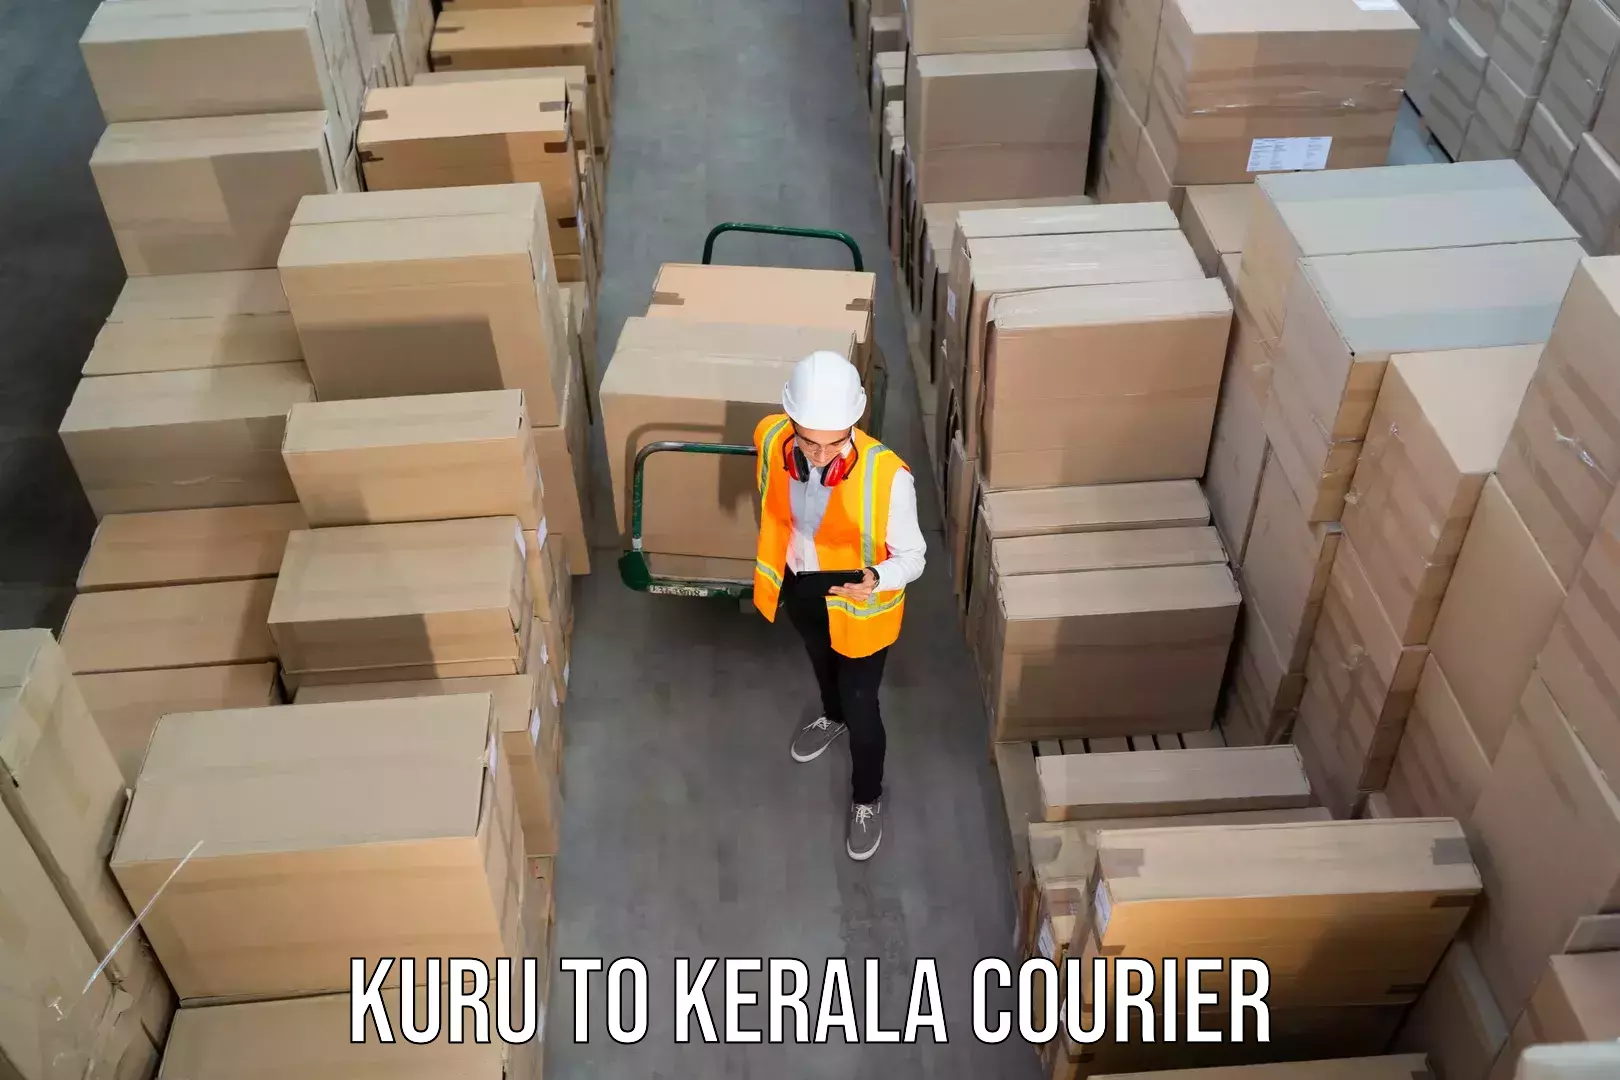 Premium courier services Kuru to Kalanjoor